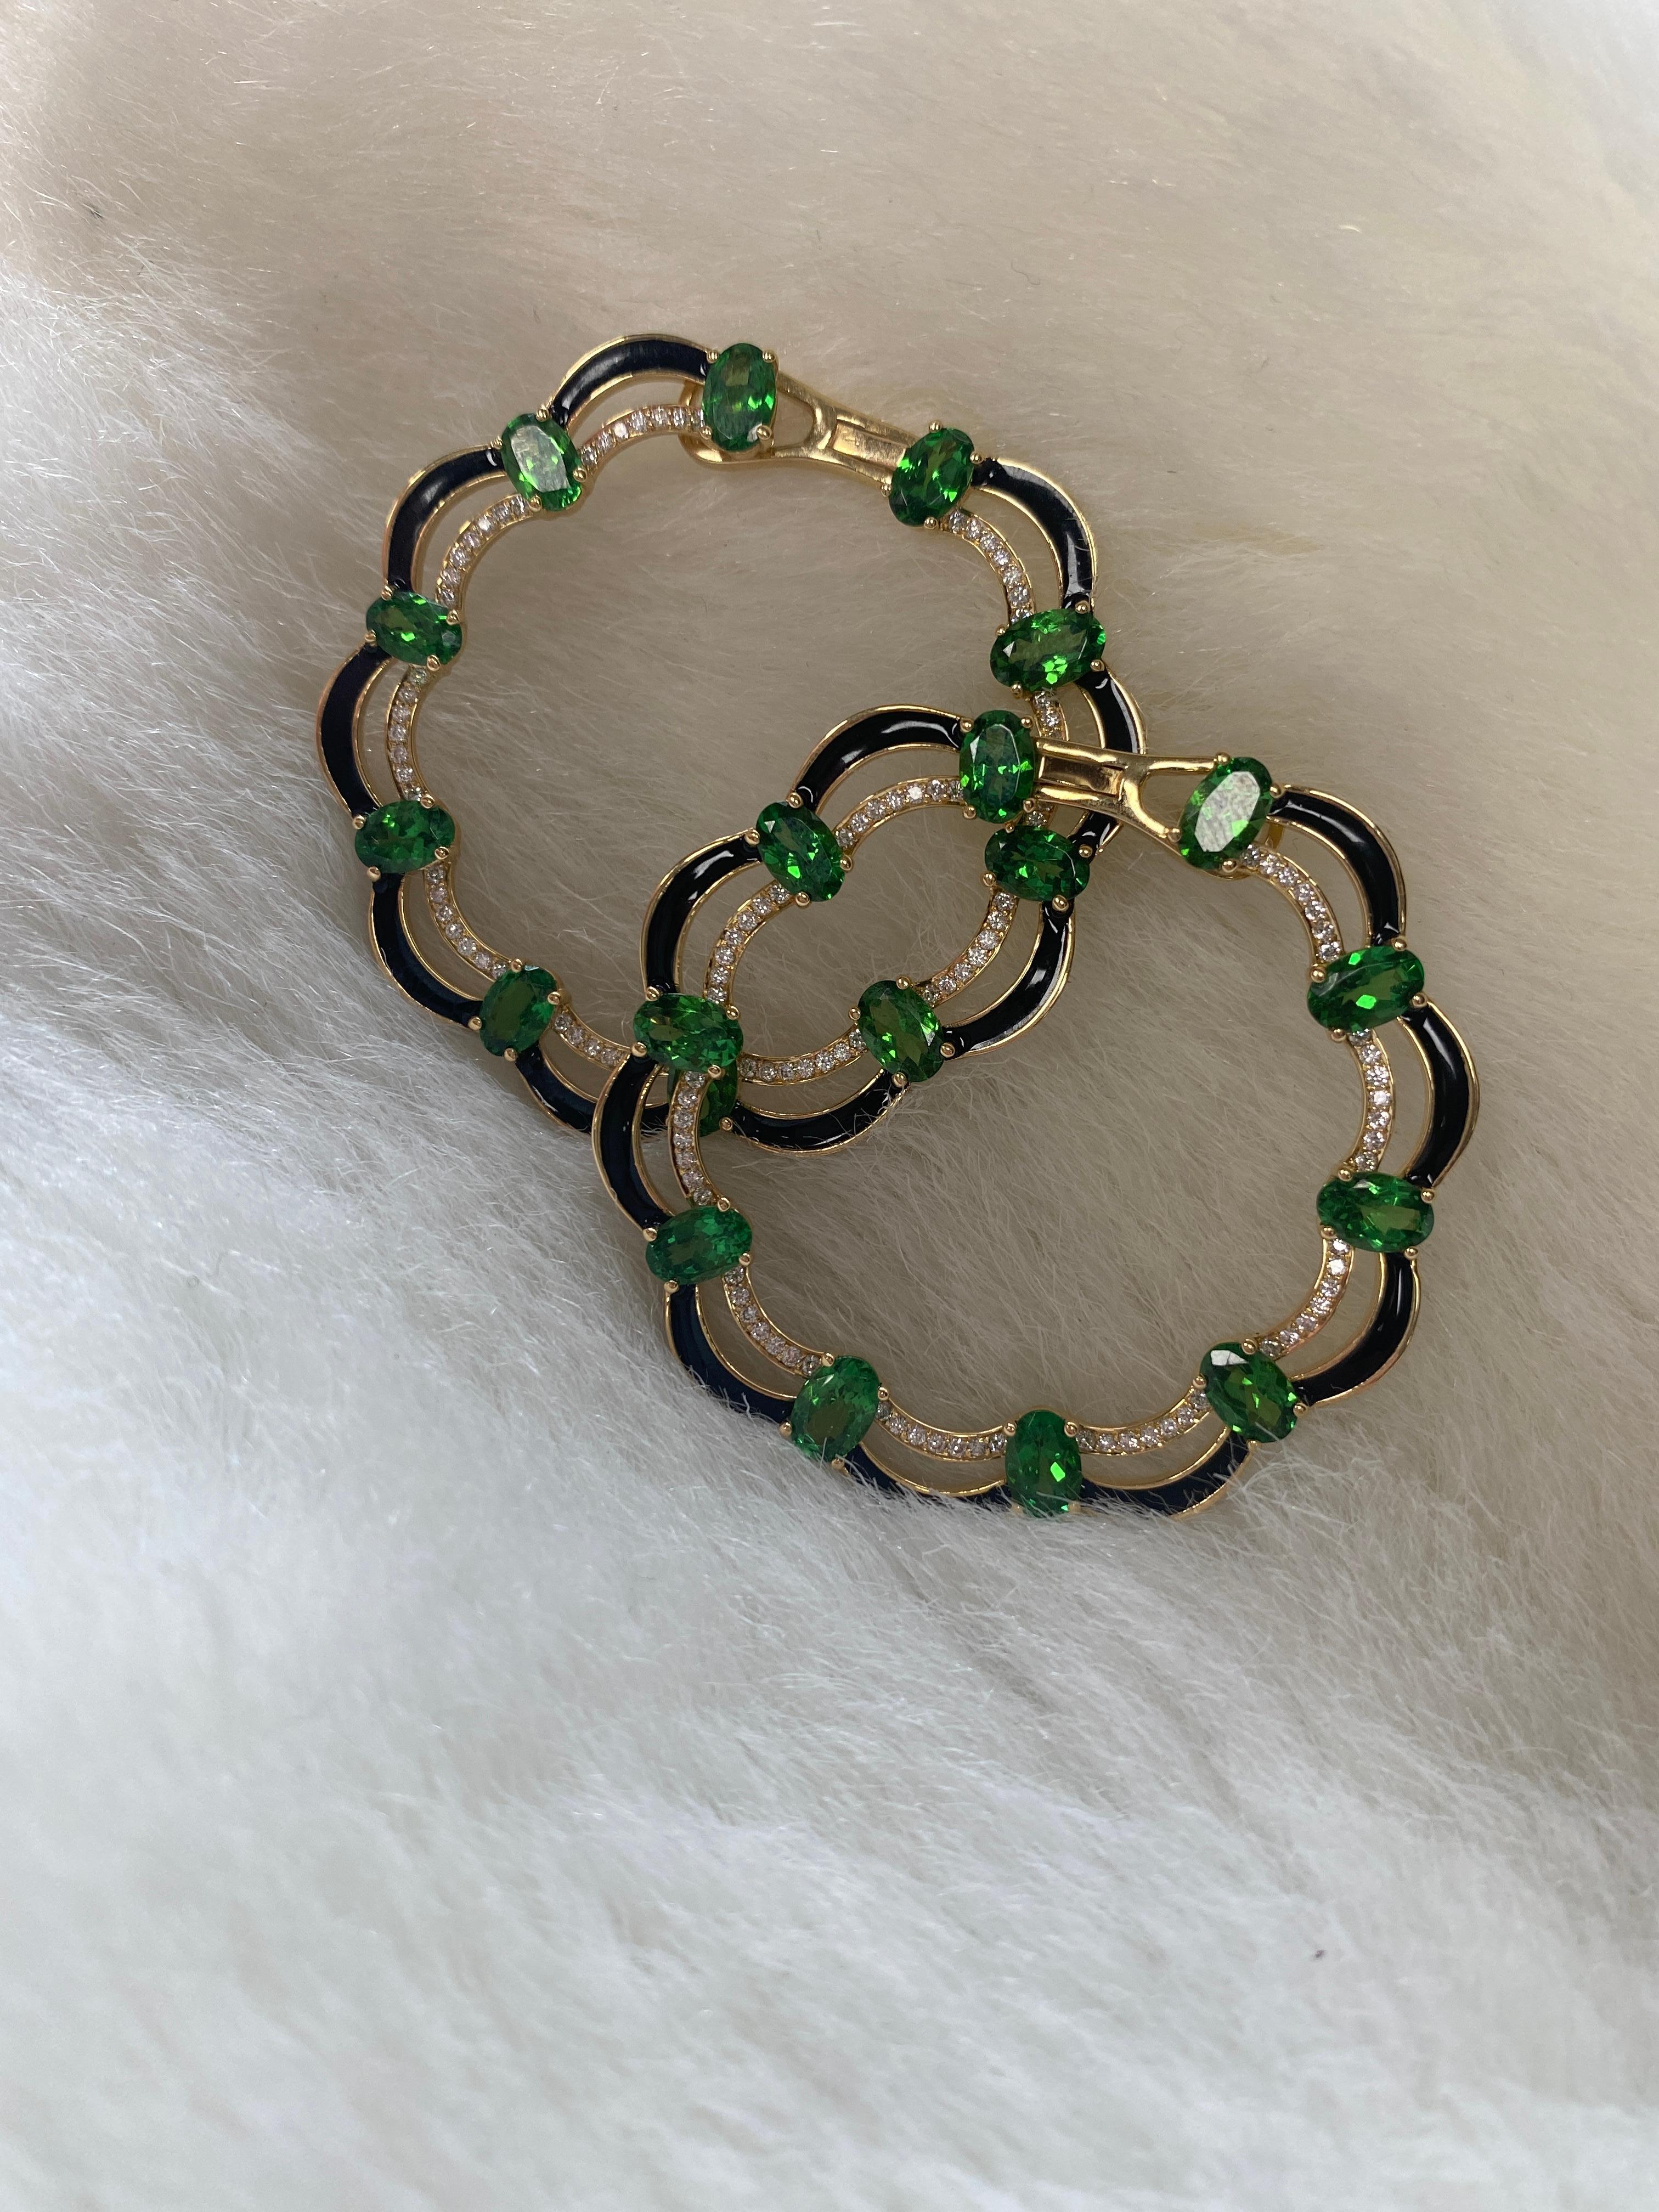 Oval Cut Goshwara Green Tsavorite with Diamonds Earrings  For Sale